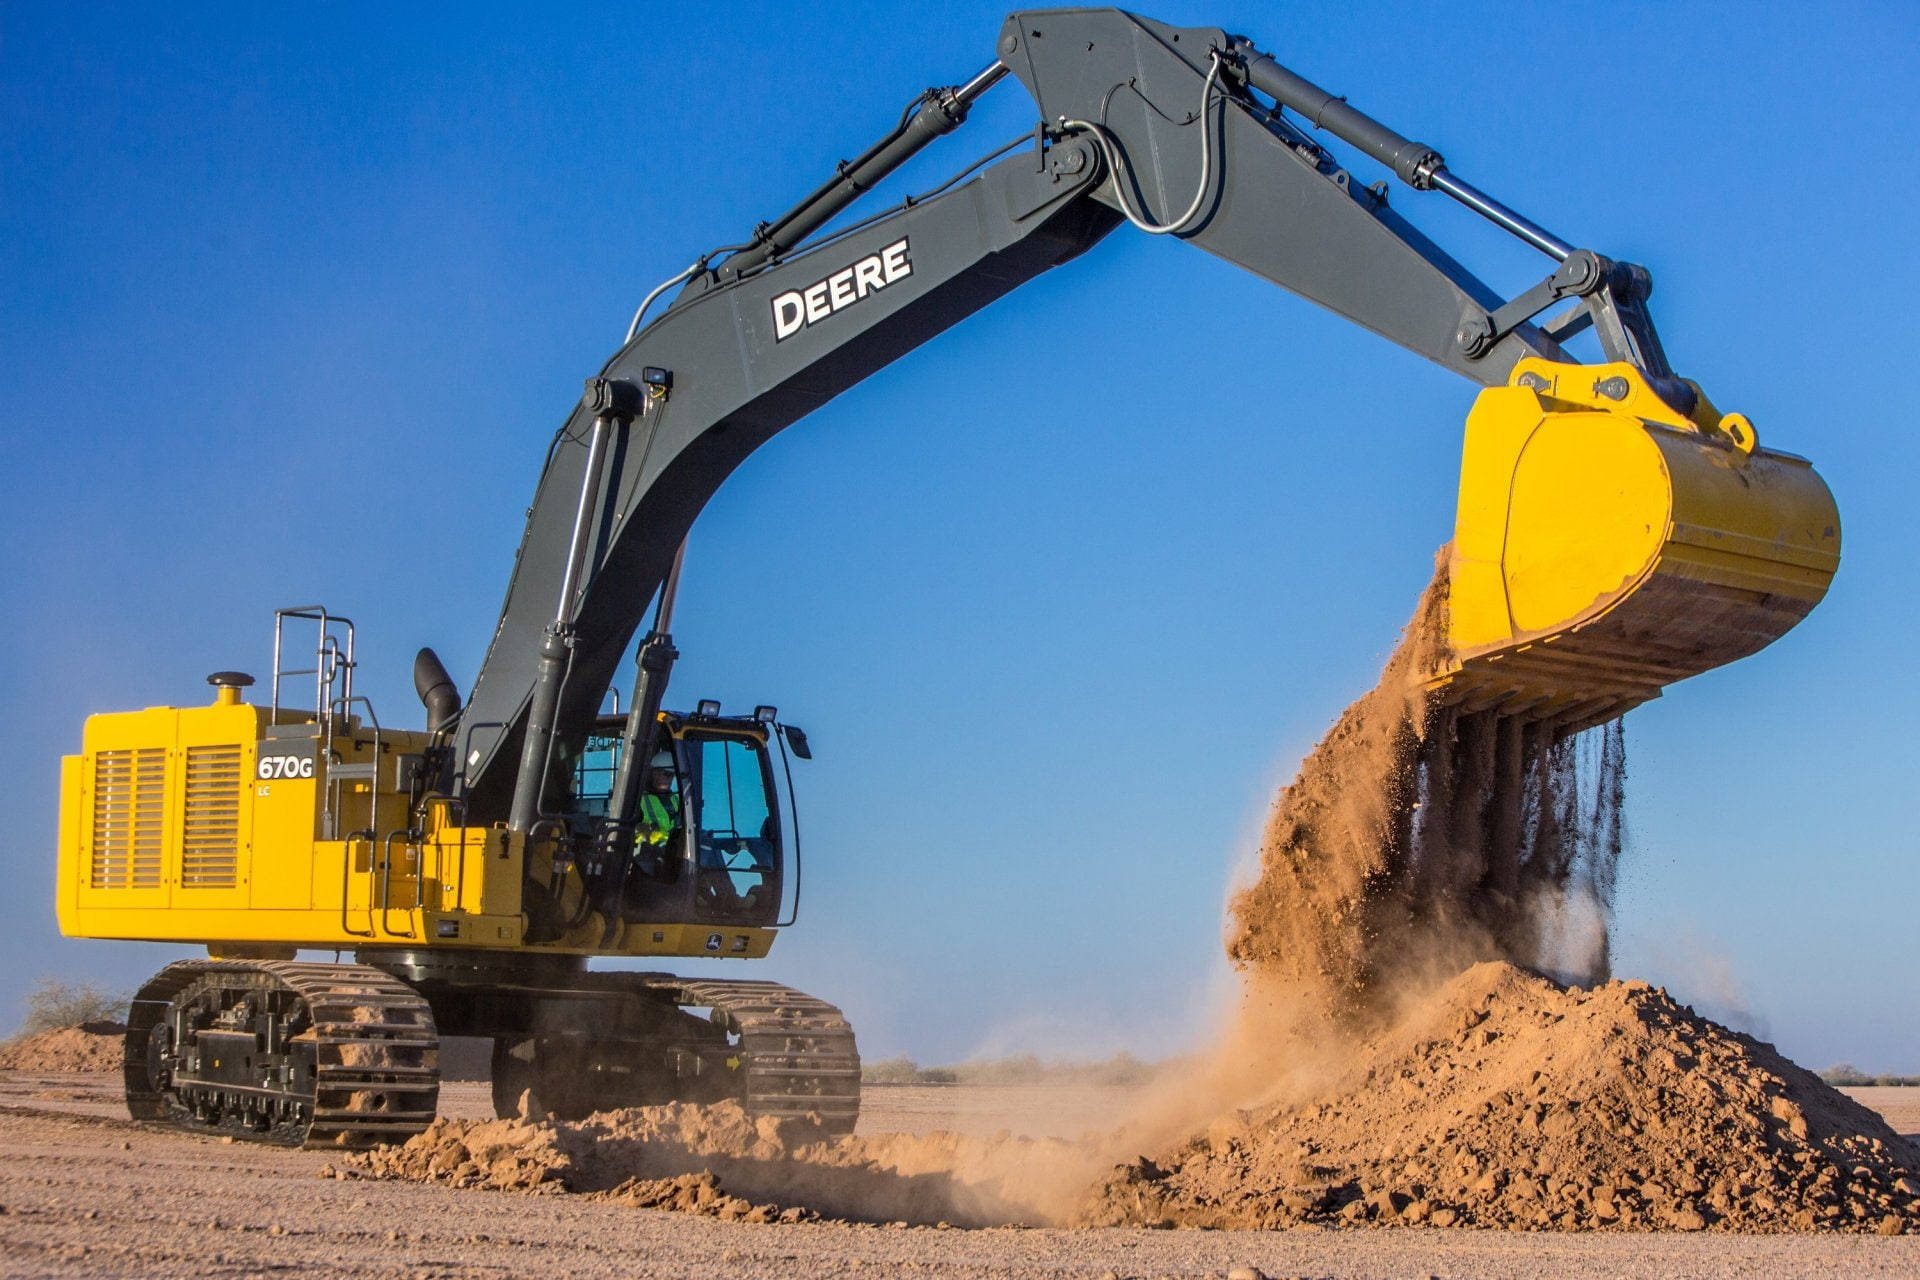 Large John Deere Excavator In Action